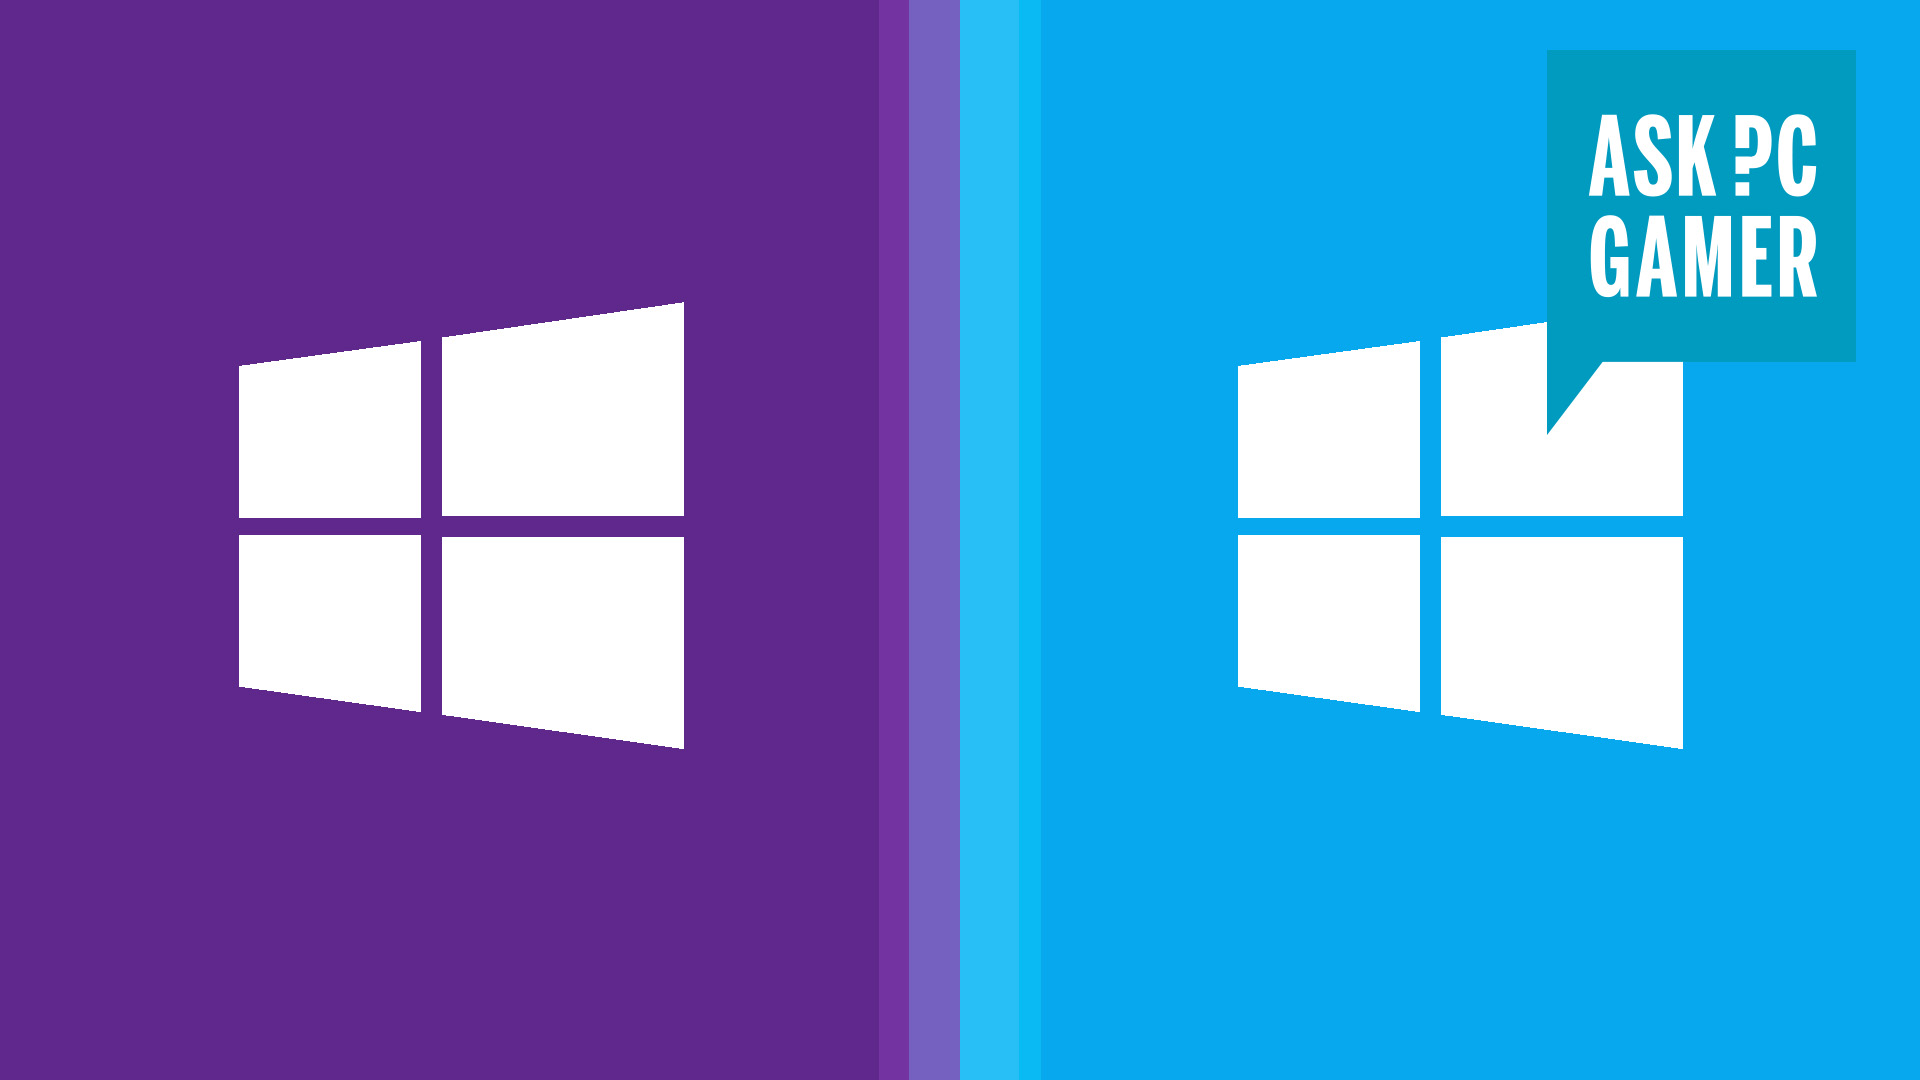 QUAL É MELHOR? Windows 11 vs Windows 10 em JOGOS (DEU RUIM!) 